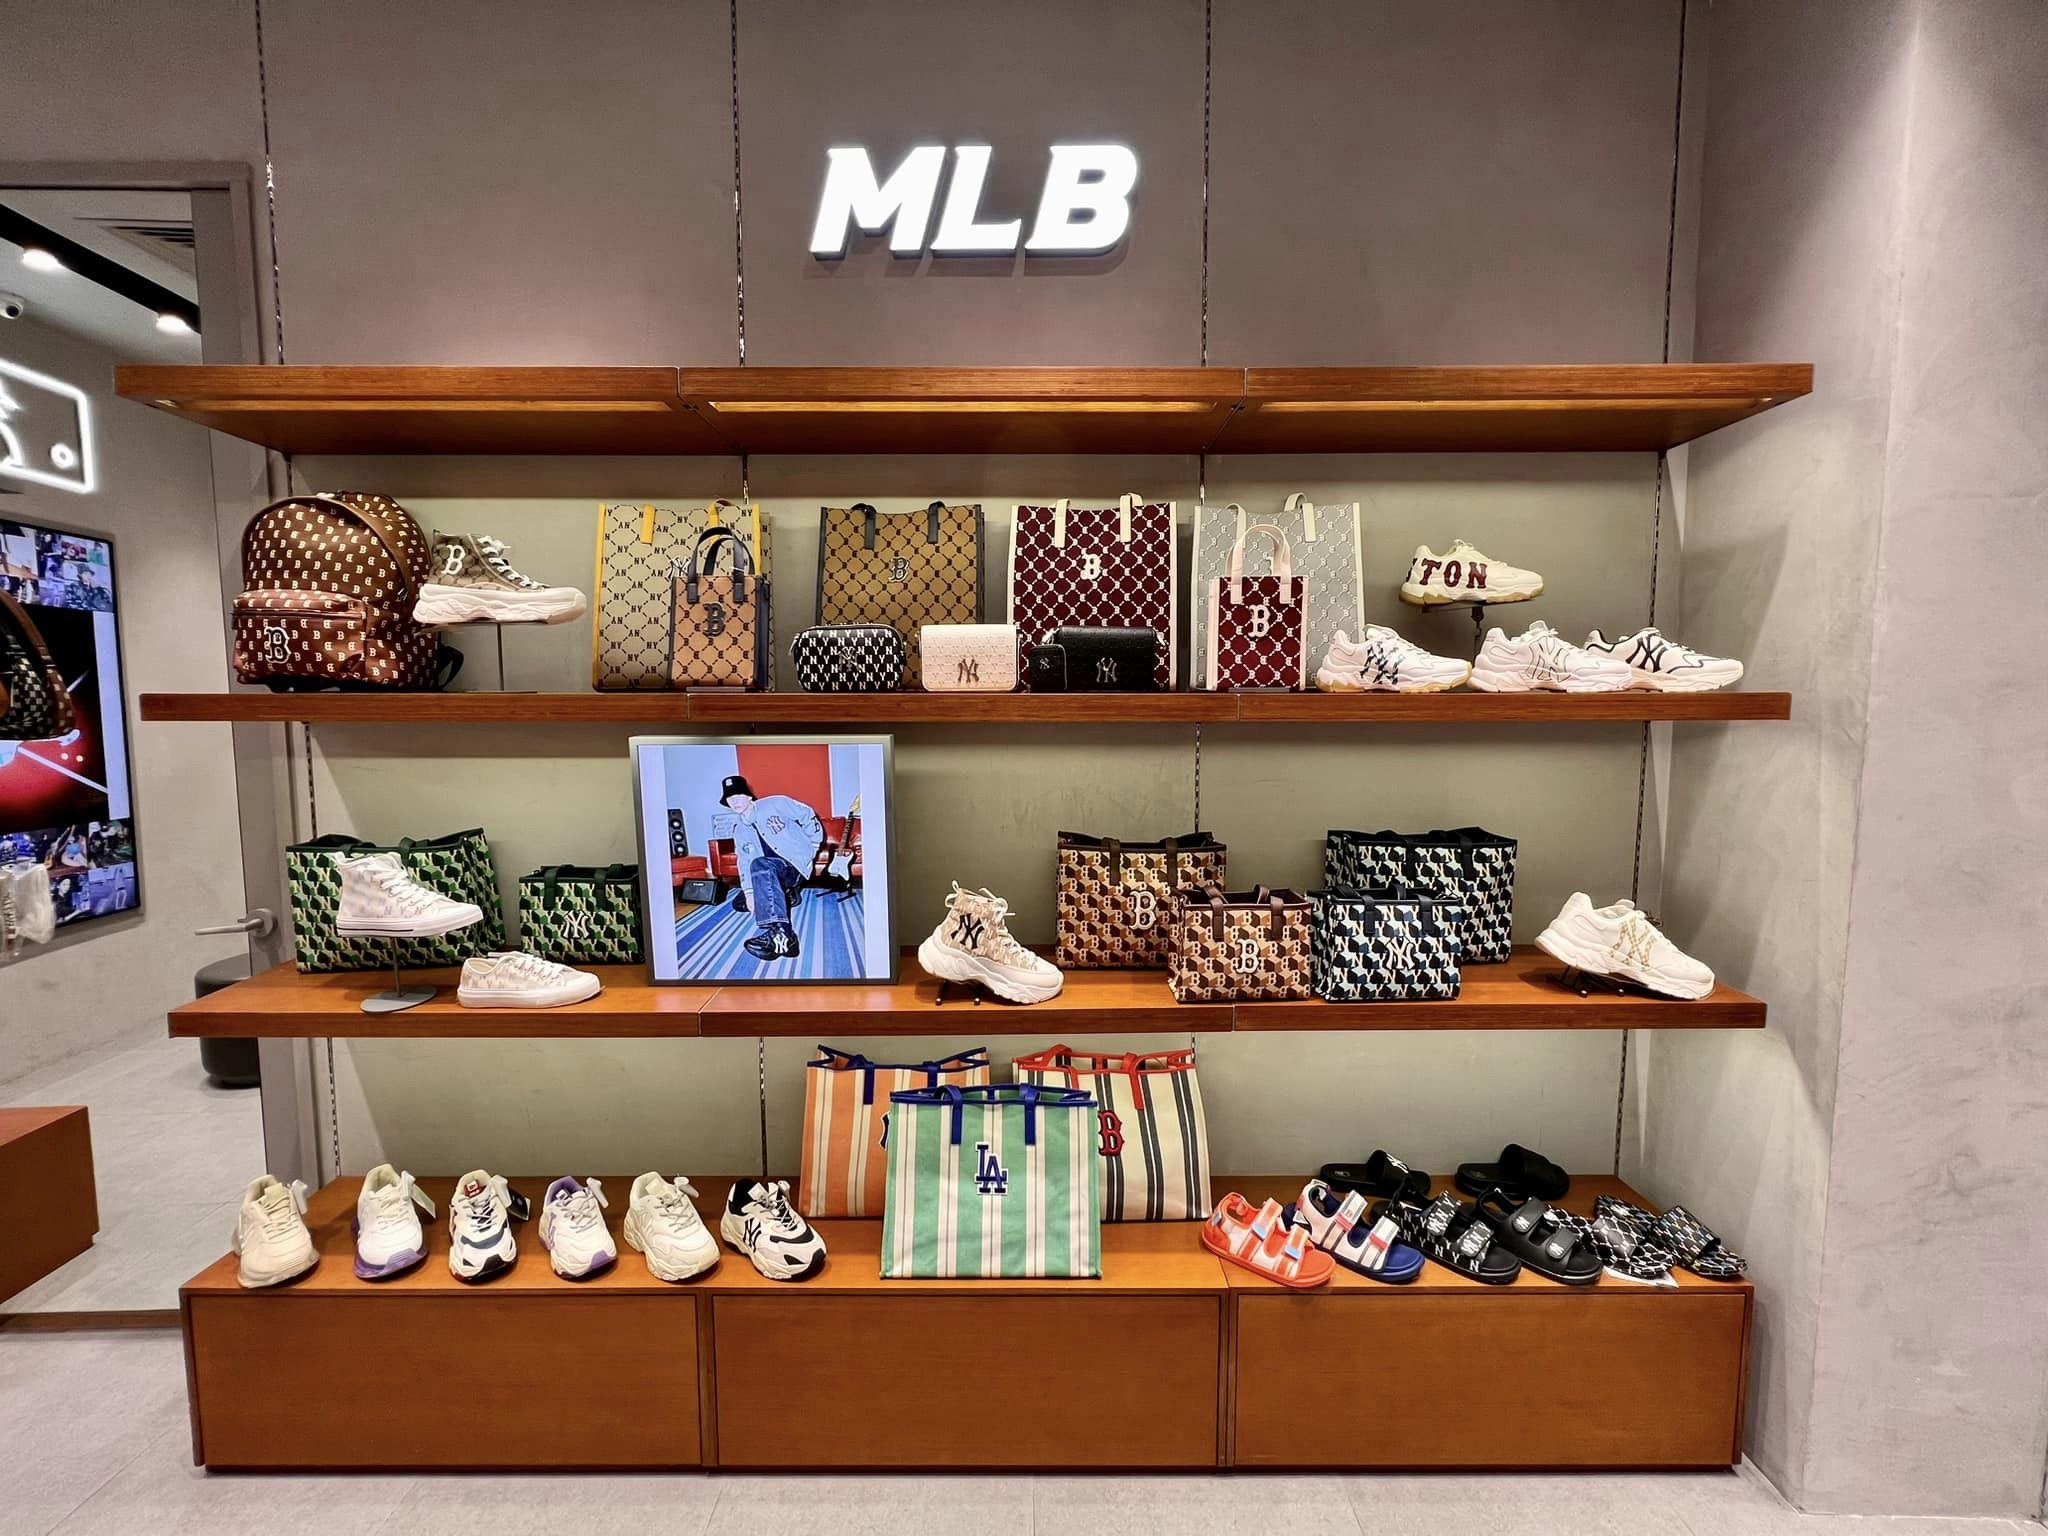 MLB chơi lớn khai trương cửa hàng đầu tiên cực chất tại Hải Phòng cả MCK  và Tlinh cũng phải trầm trồ